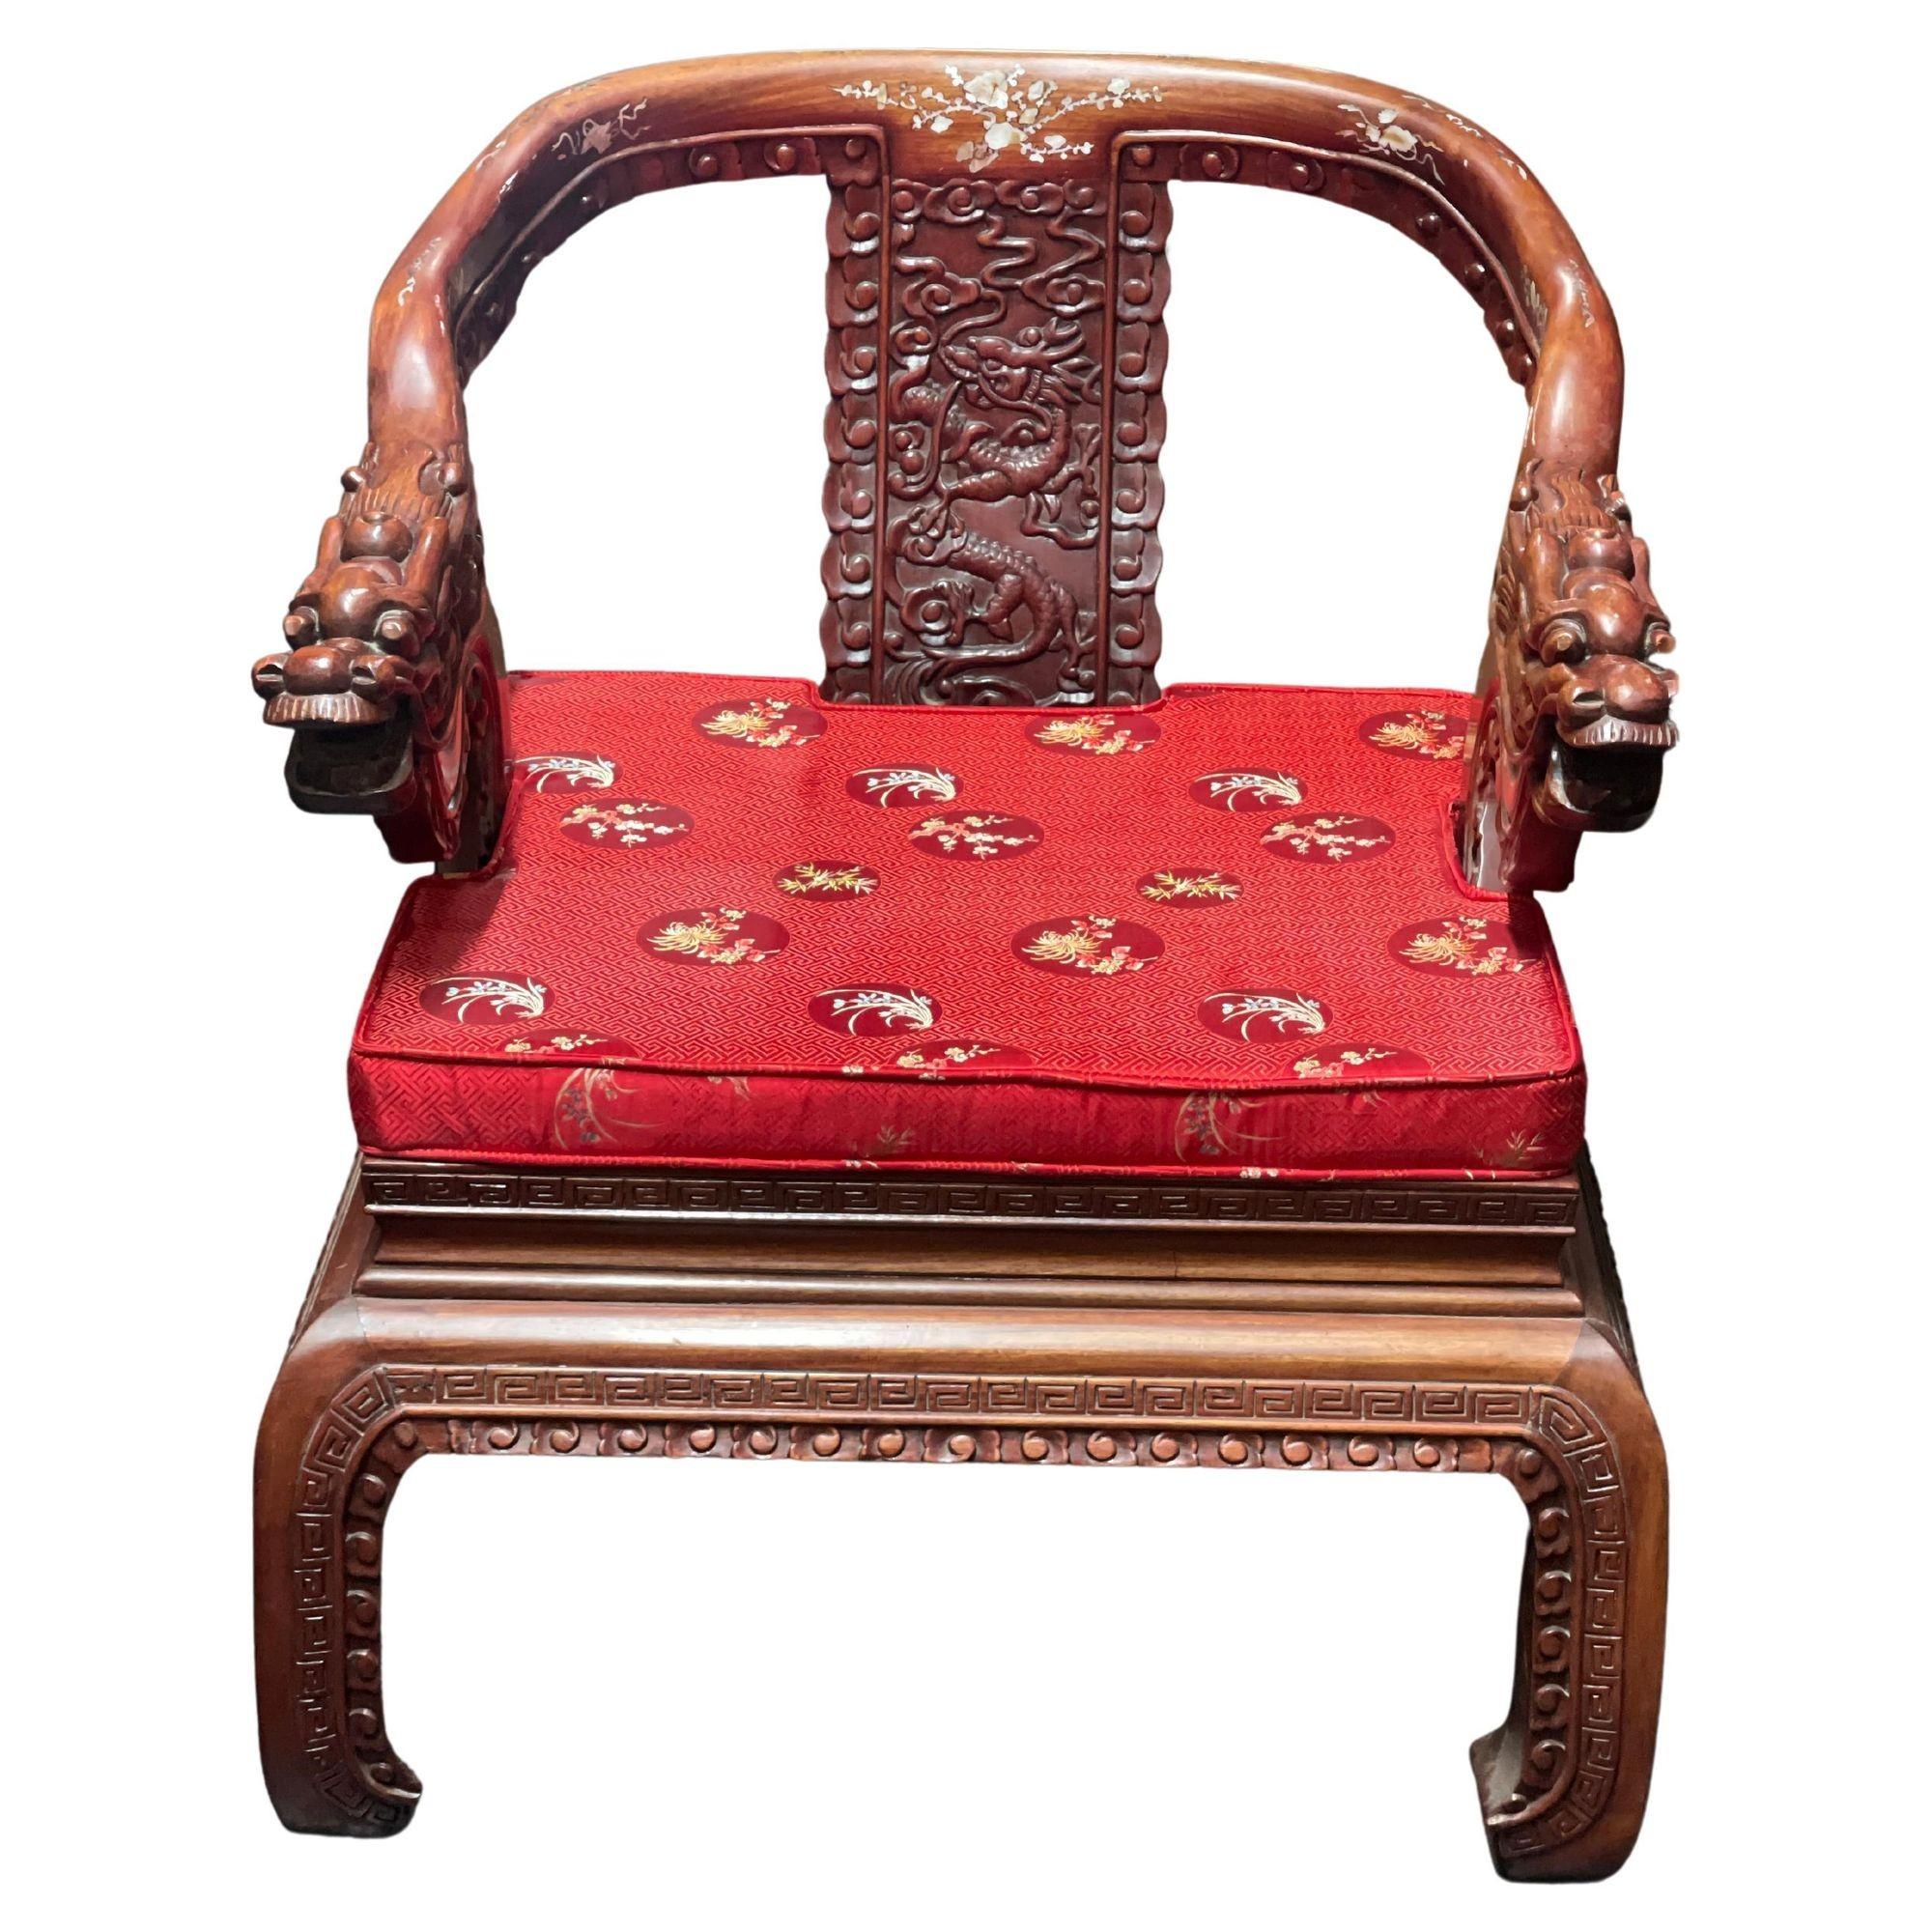 Ensemble de quatre fauteuils chinois en bois sculpté représentant des figures de dragon sur tout le pourtour, incrustation de nacre et coussins en satin rouge à motifs floraux. (C.I.C.)
Dimensions :
30 